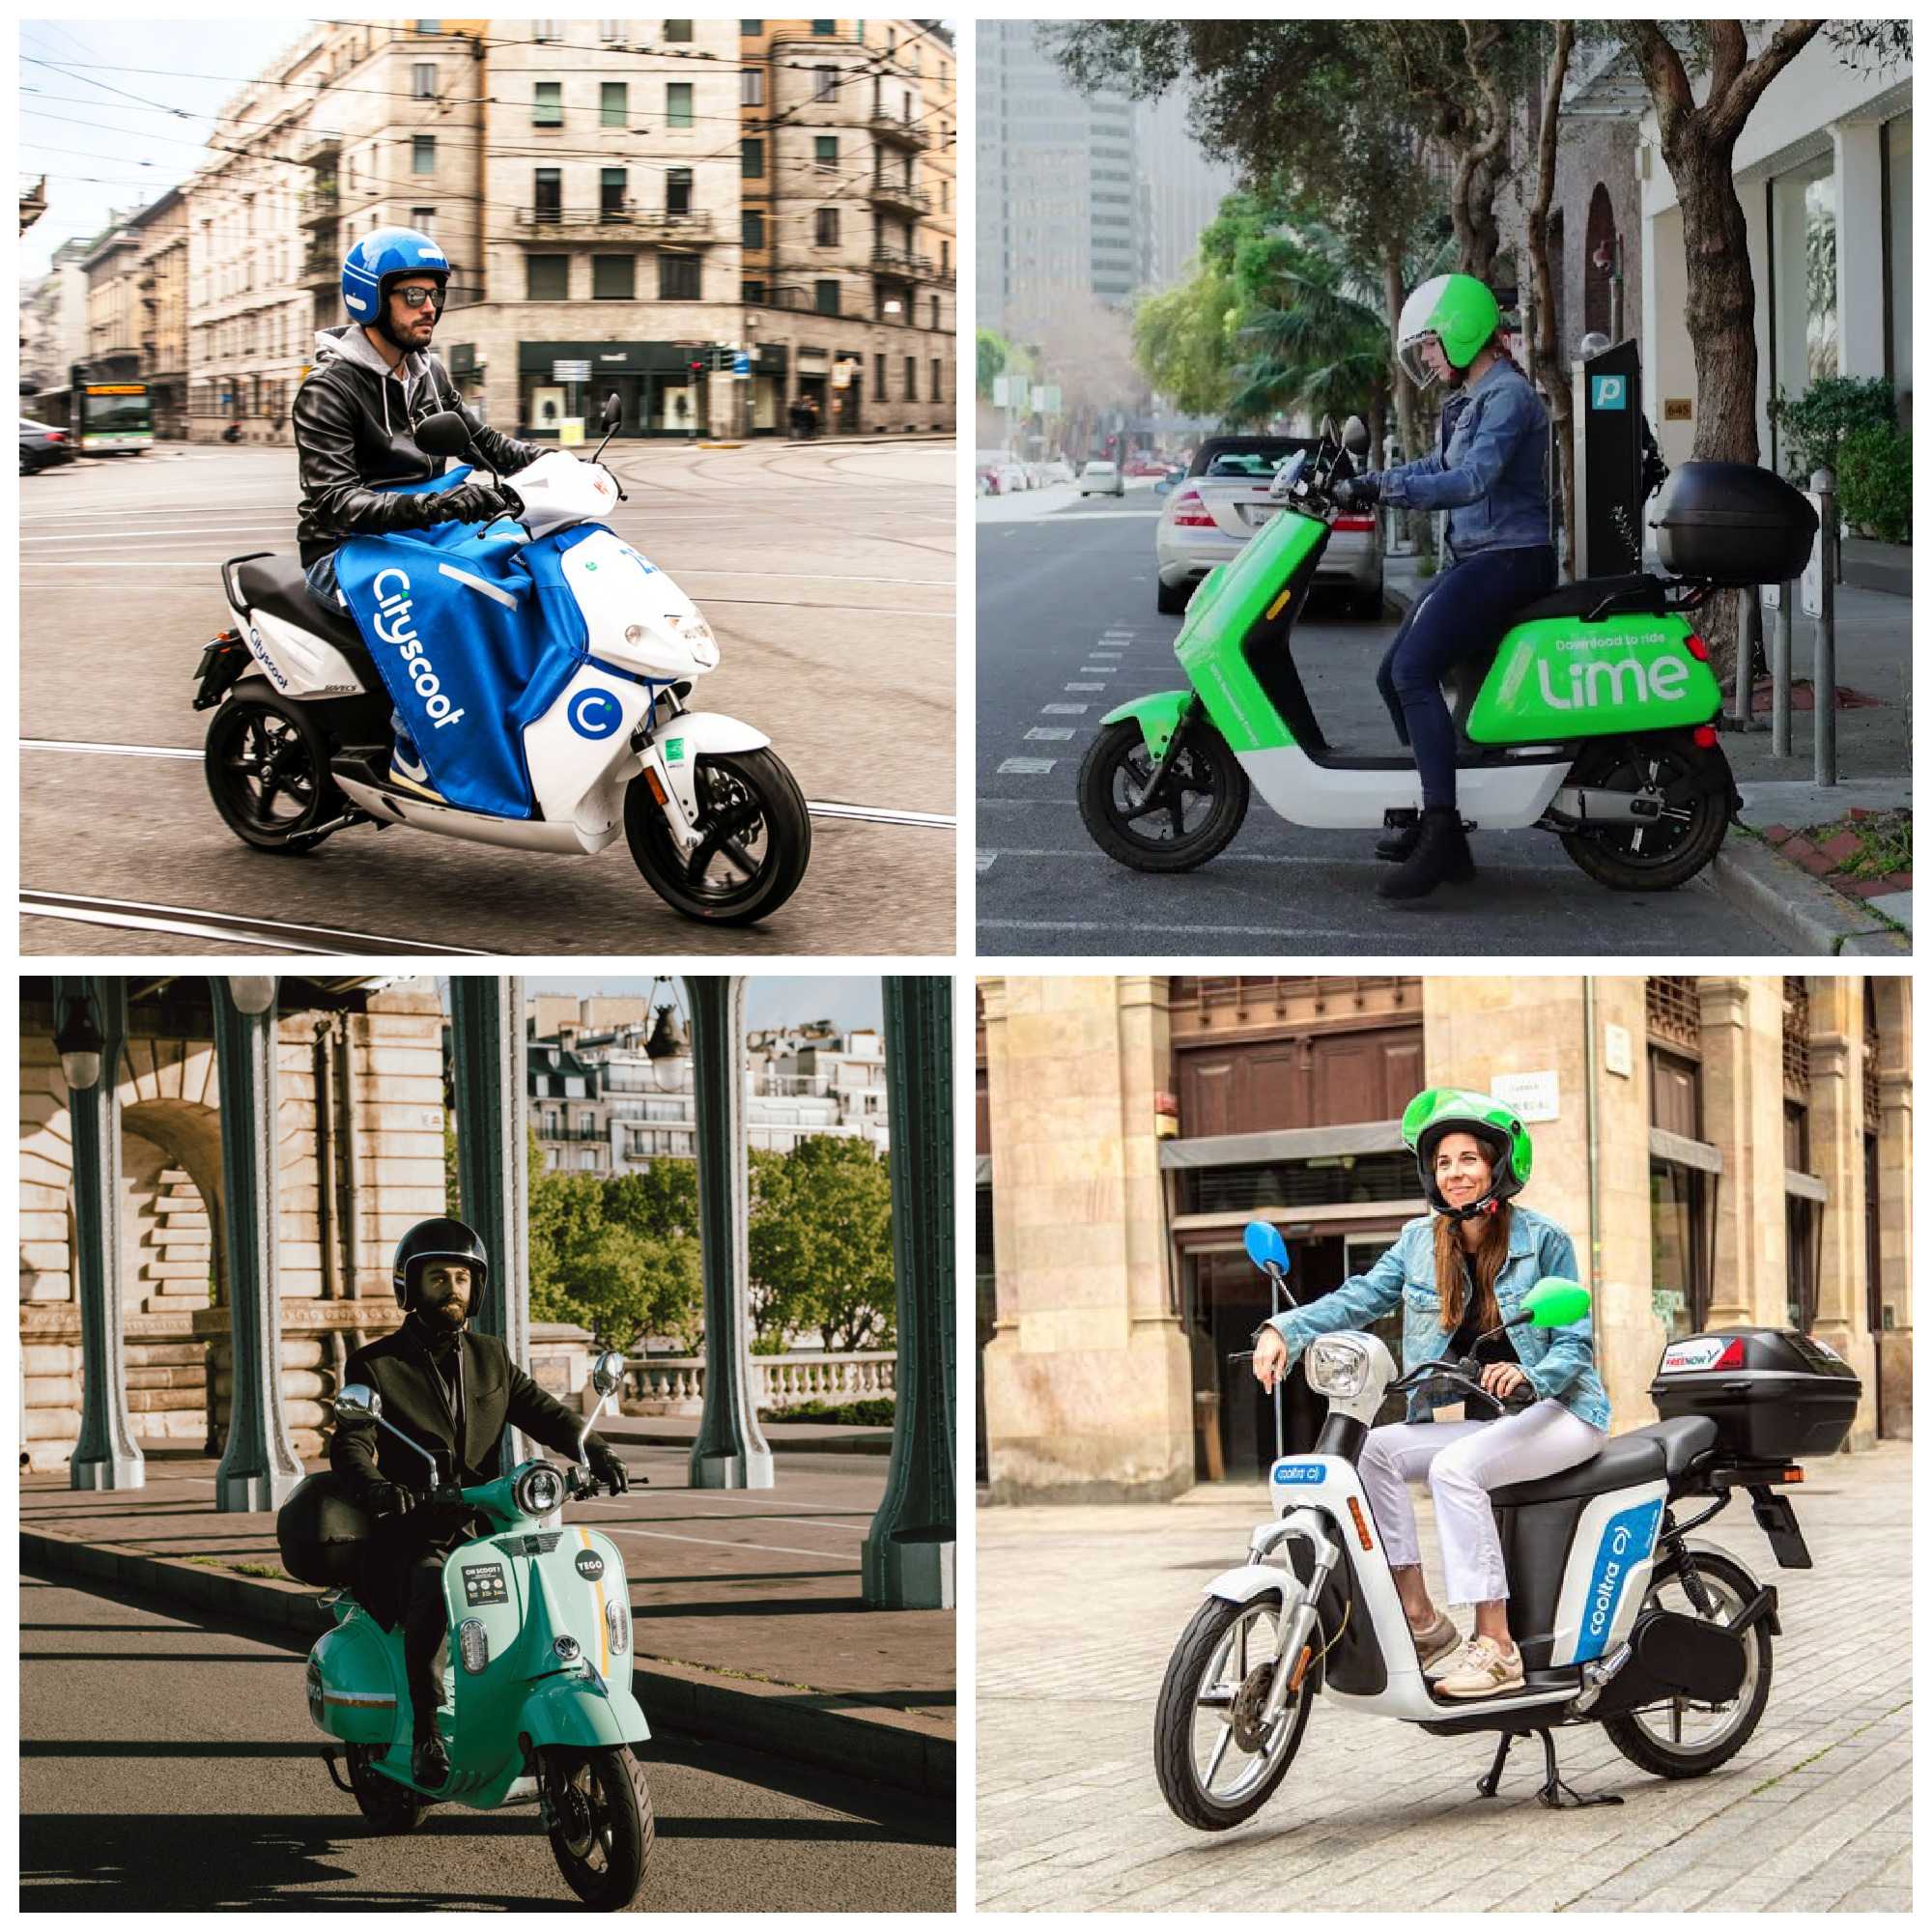 Services de scooters électriques en libre-service : prix, avantages et inconvénients, notre comparatif ultime